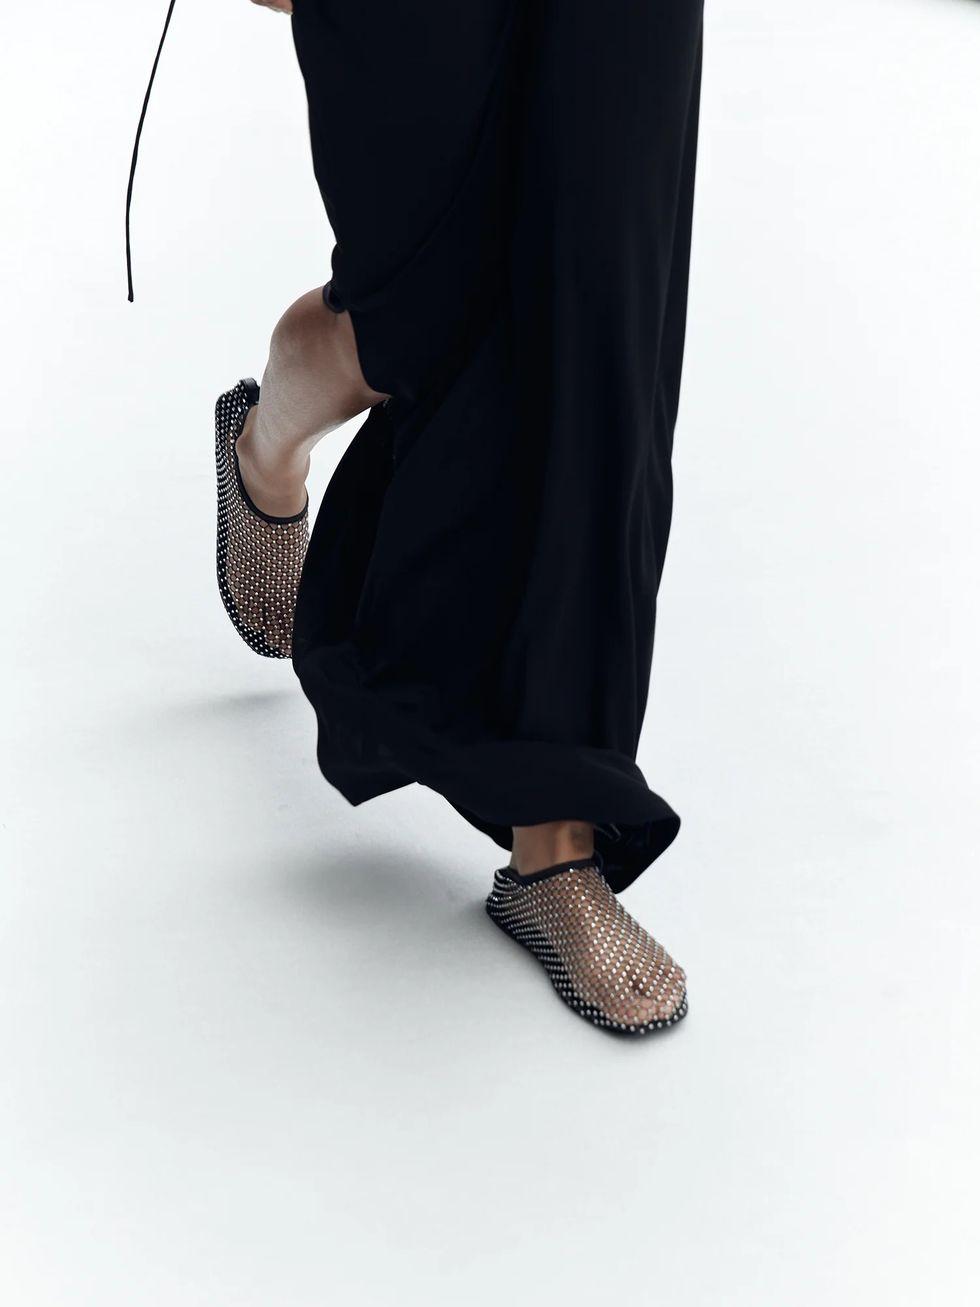 Pár populárnych topánok Minette od Christophera Esbera obopínajú chodidlo ako trblietavá sieťka.